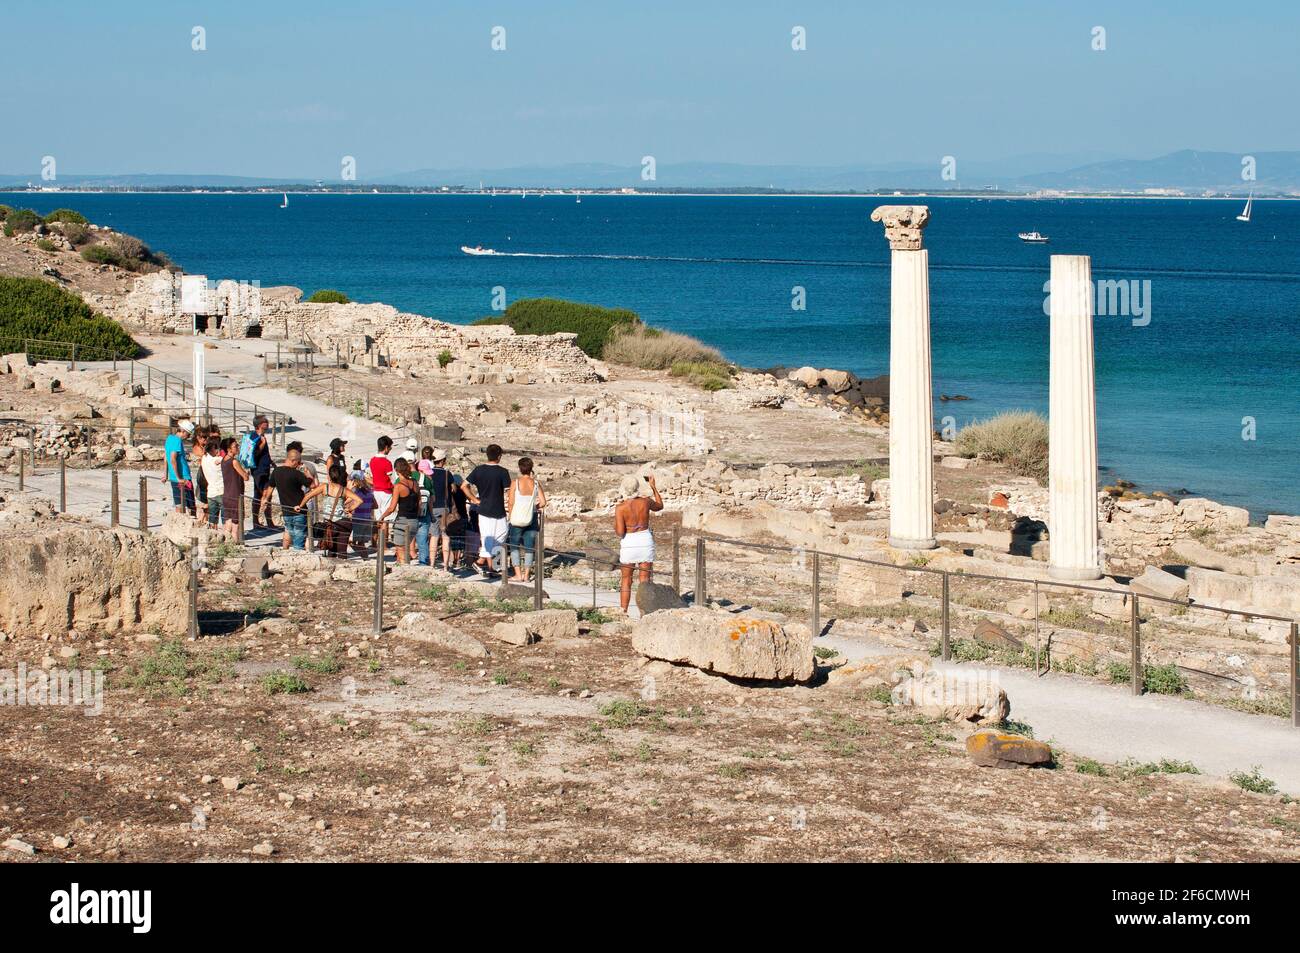 Tharros, Area Archeologica, rovine puniche e romane, Sinis, Cabras, Oristano, Sardegna, Italia, Europa Foto Stock